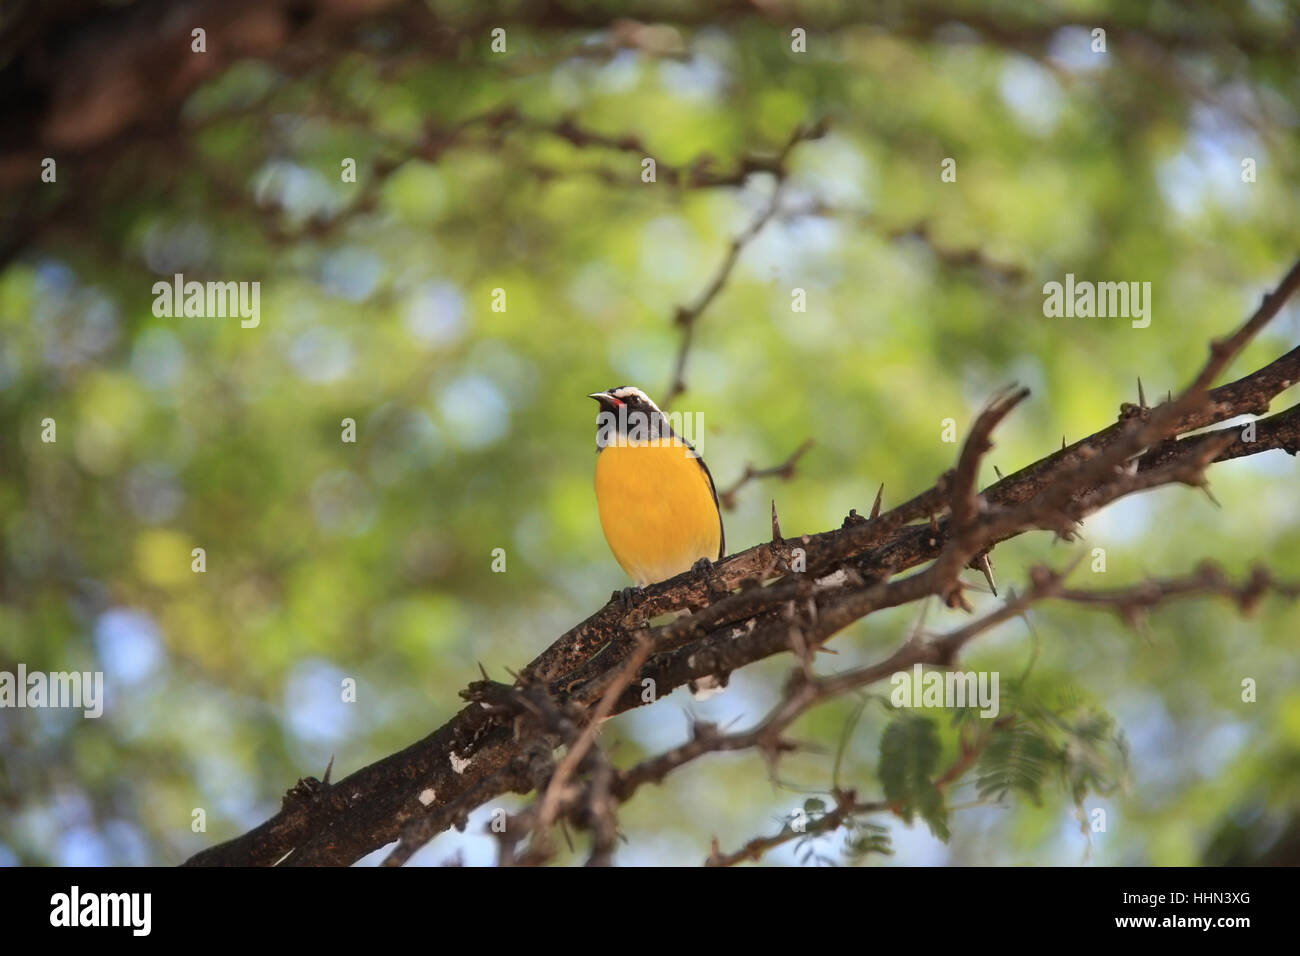 Bananaquit Bird (Coereba flaveola) on a branch in Curacao Stock Photo